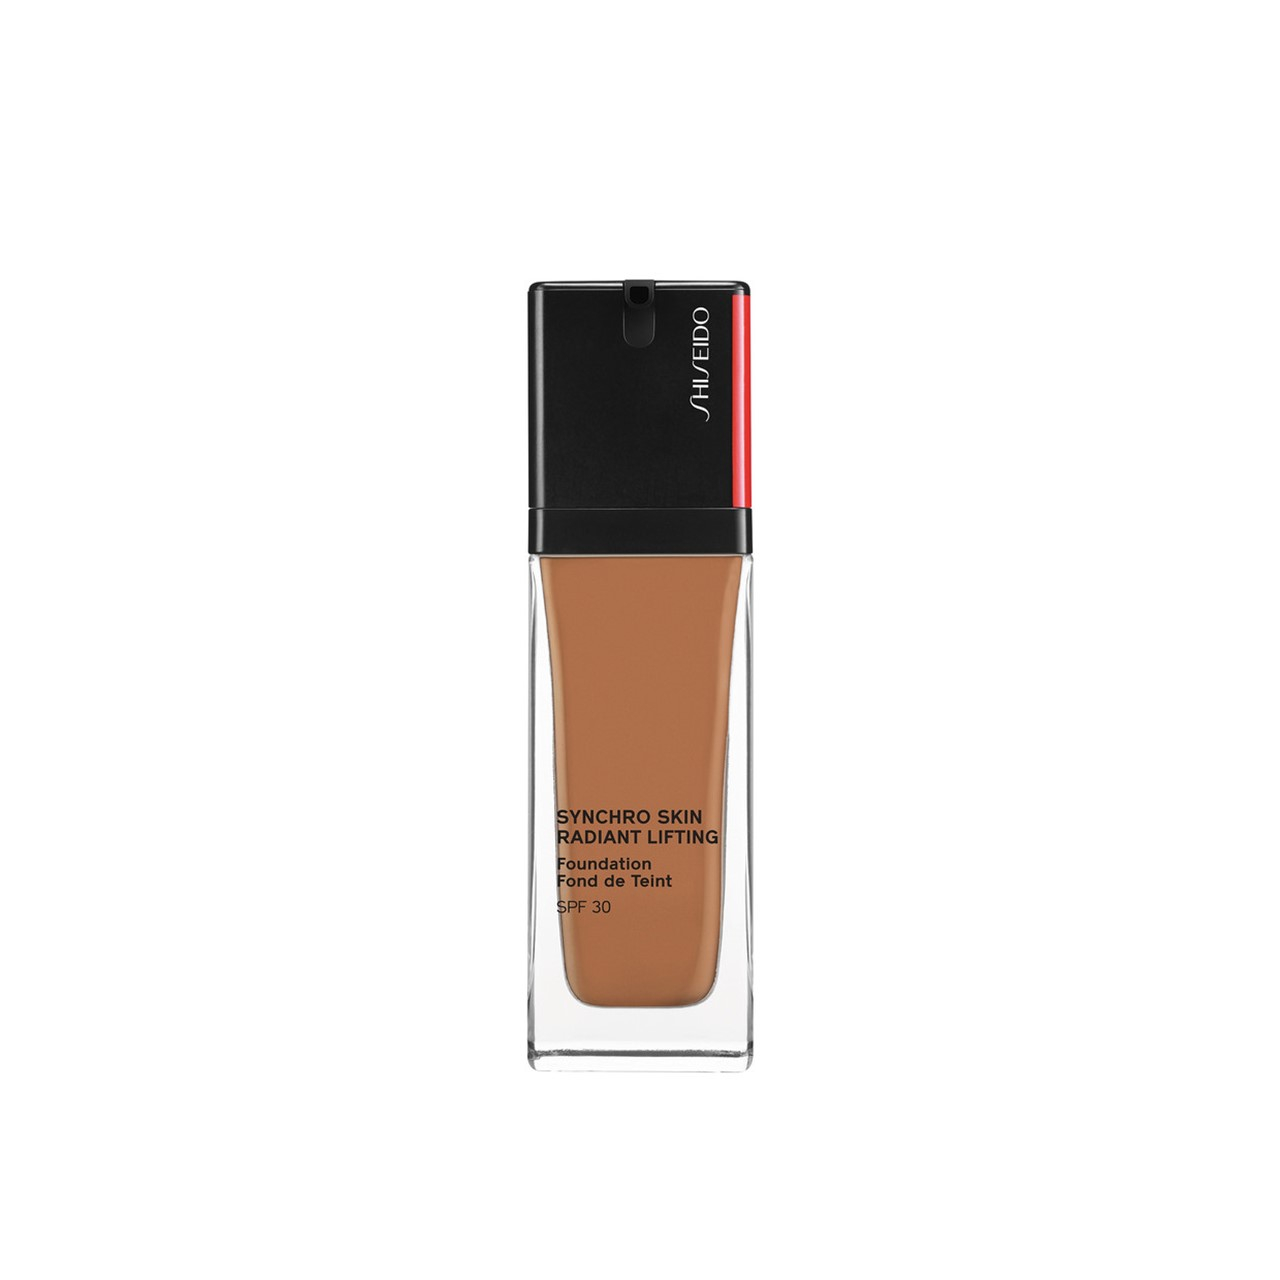 Shiseido Synchro Skin Radiant Lifting Foundation SPF30 430 Cedar 30ml (1.01fl oz)